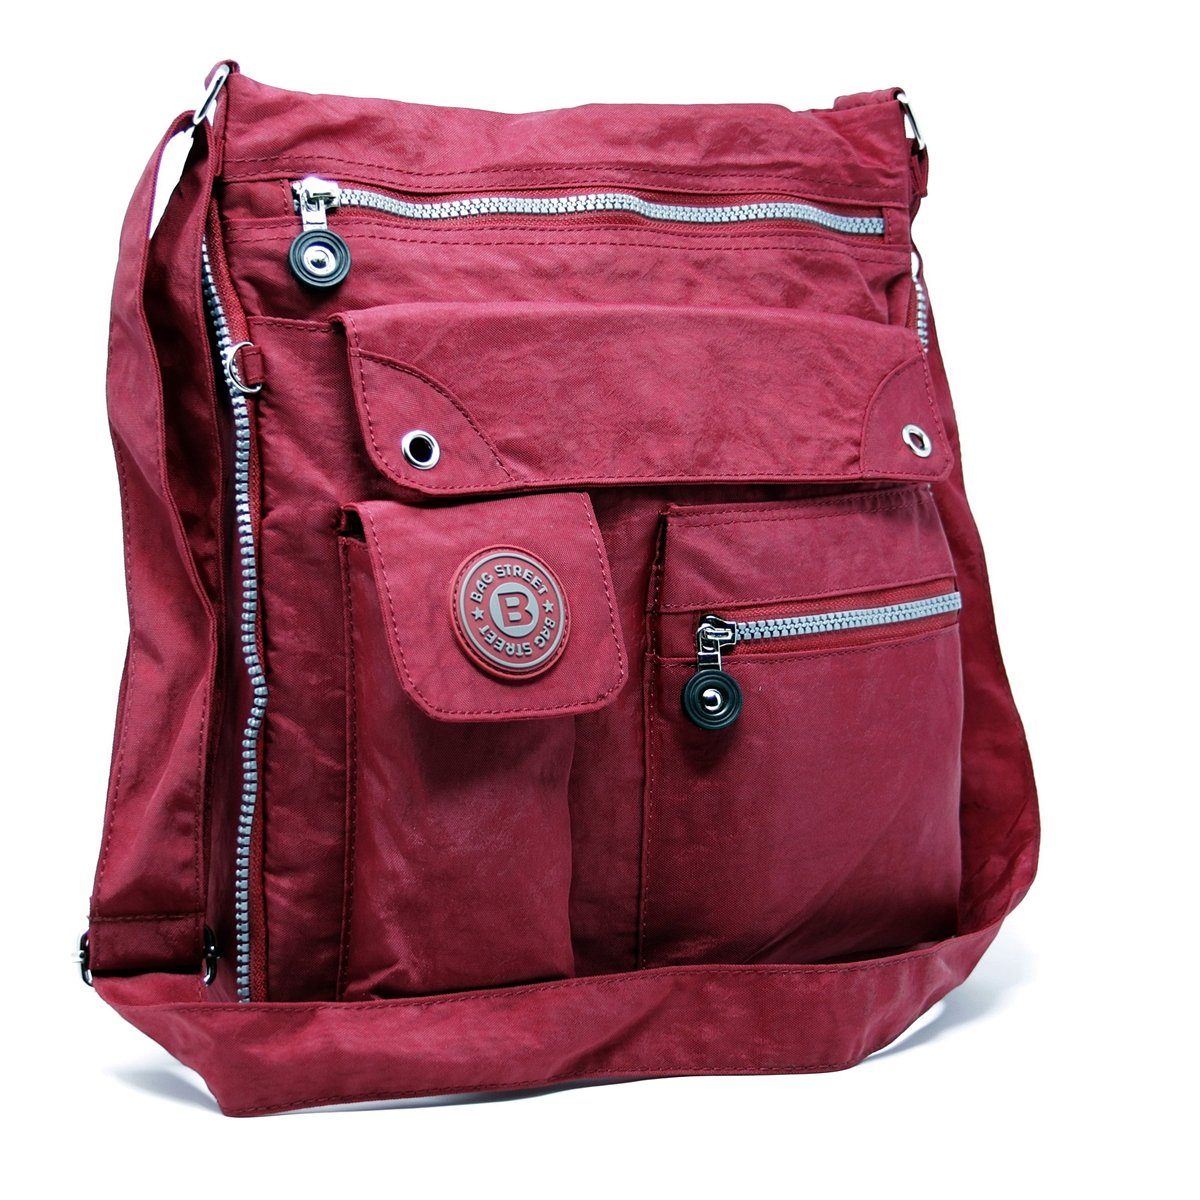 SHG Handtasche Ausverkauft, Material: Nylon/Crinkle Maße: 29 x 11 x 33 -  online kaufen | OTTO